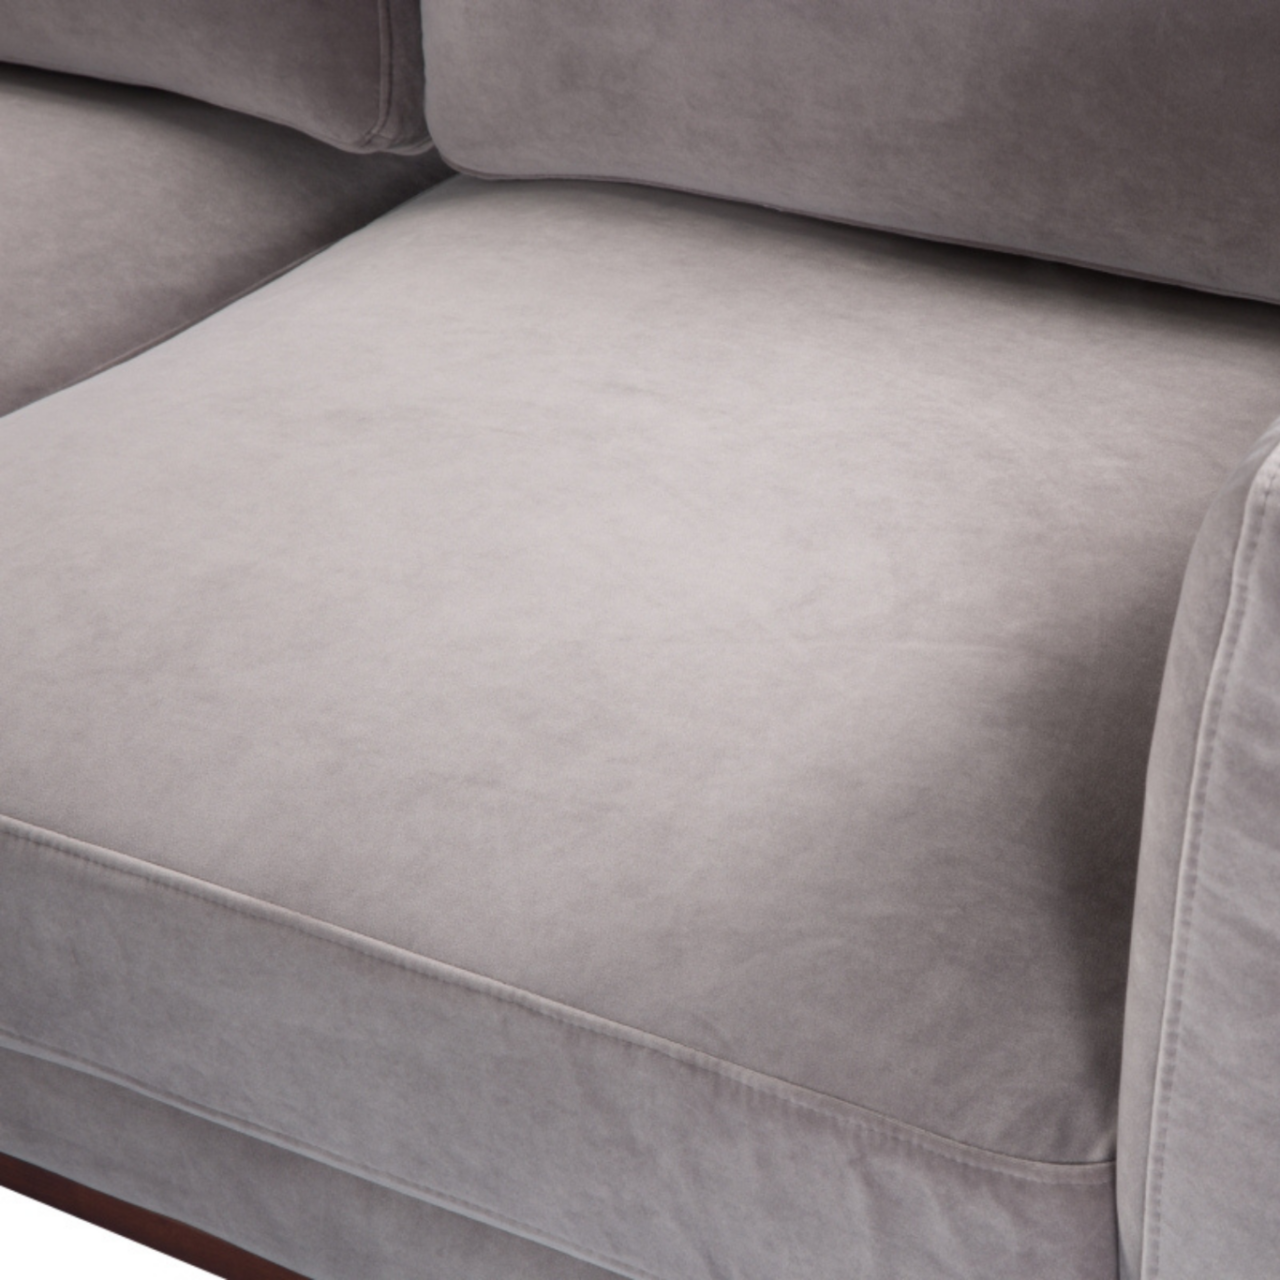 detail of simple modern 3 seater sofa in stone grey velvet upholstery